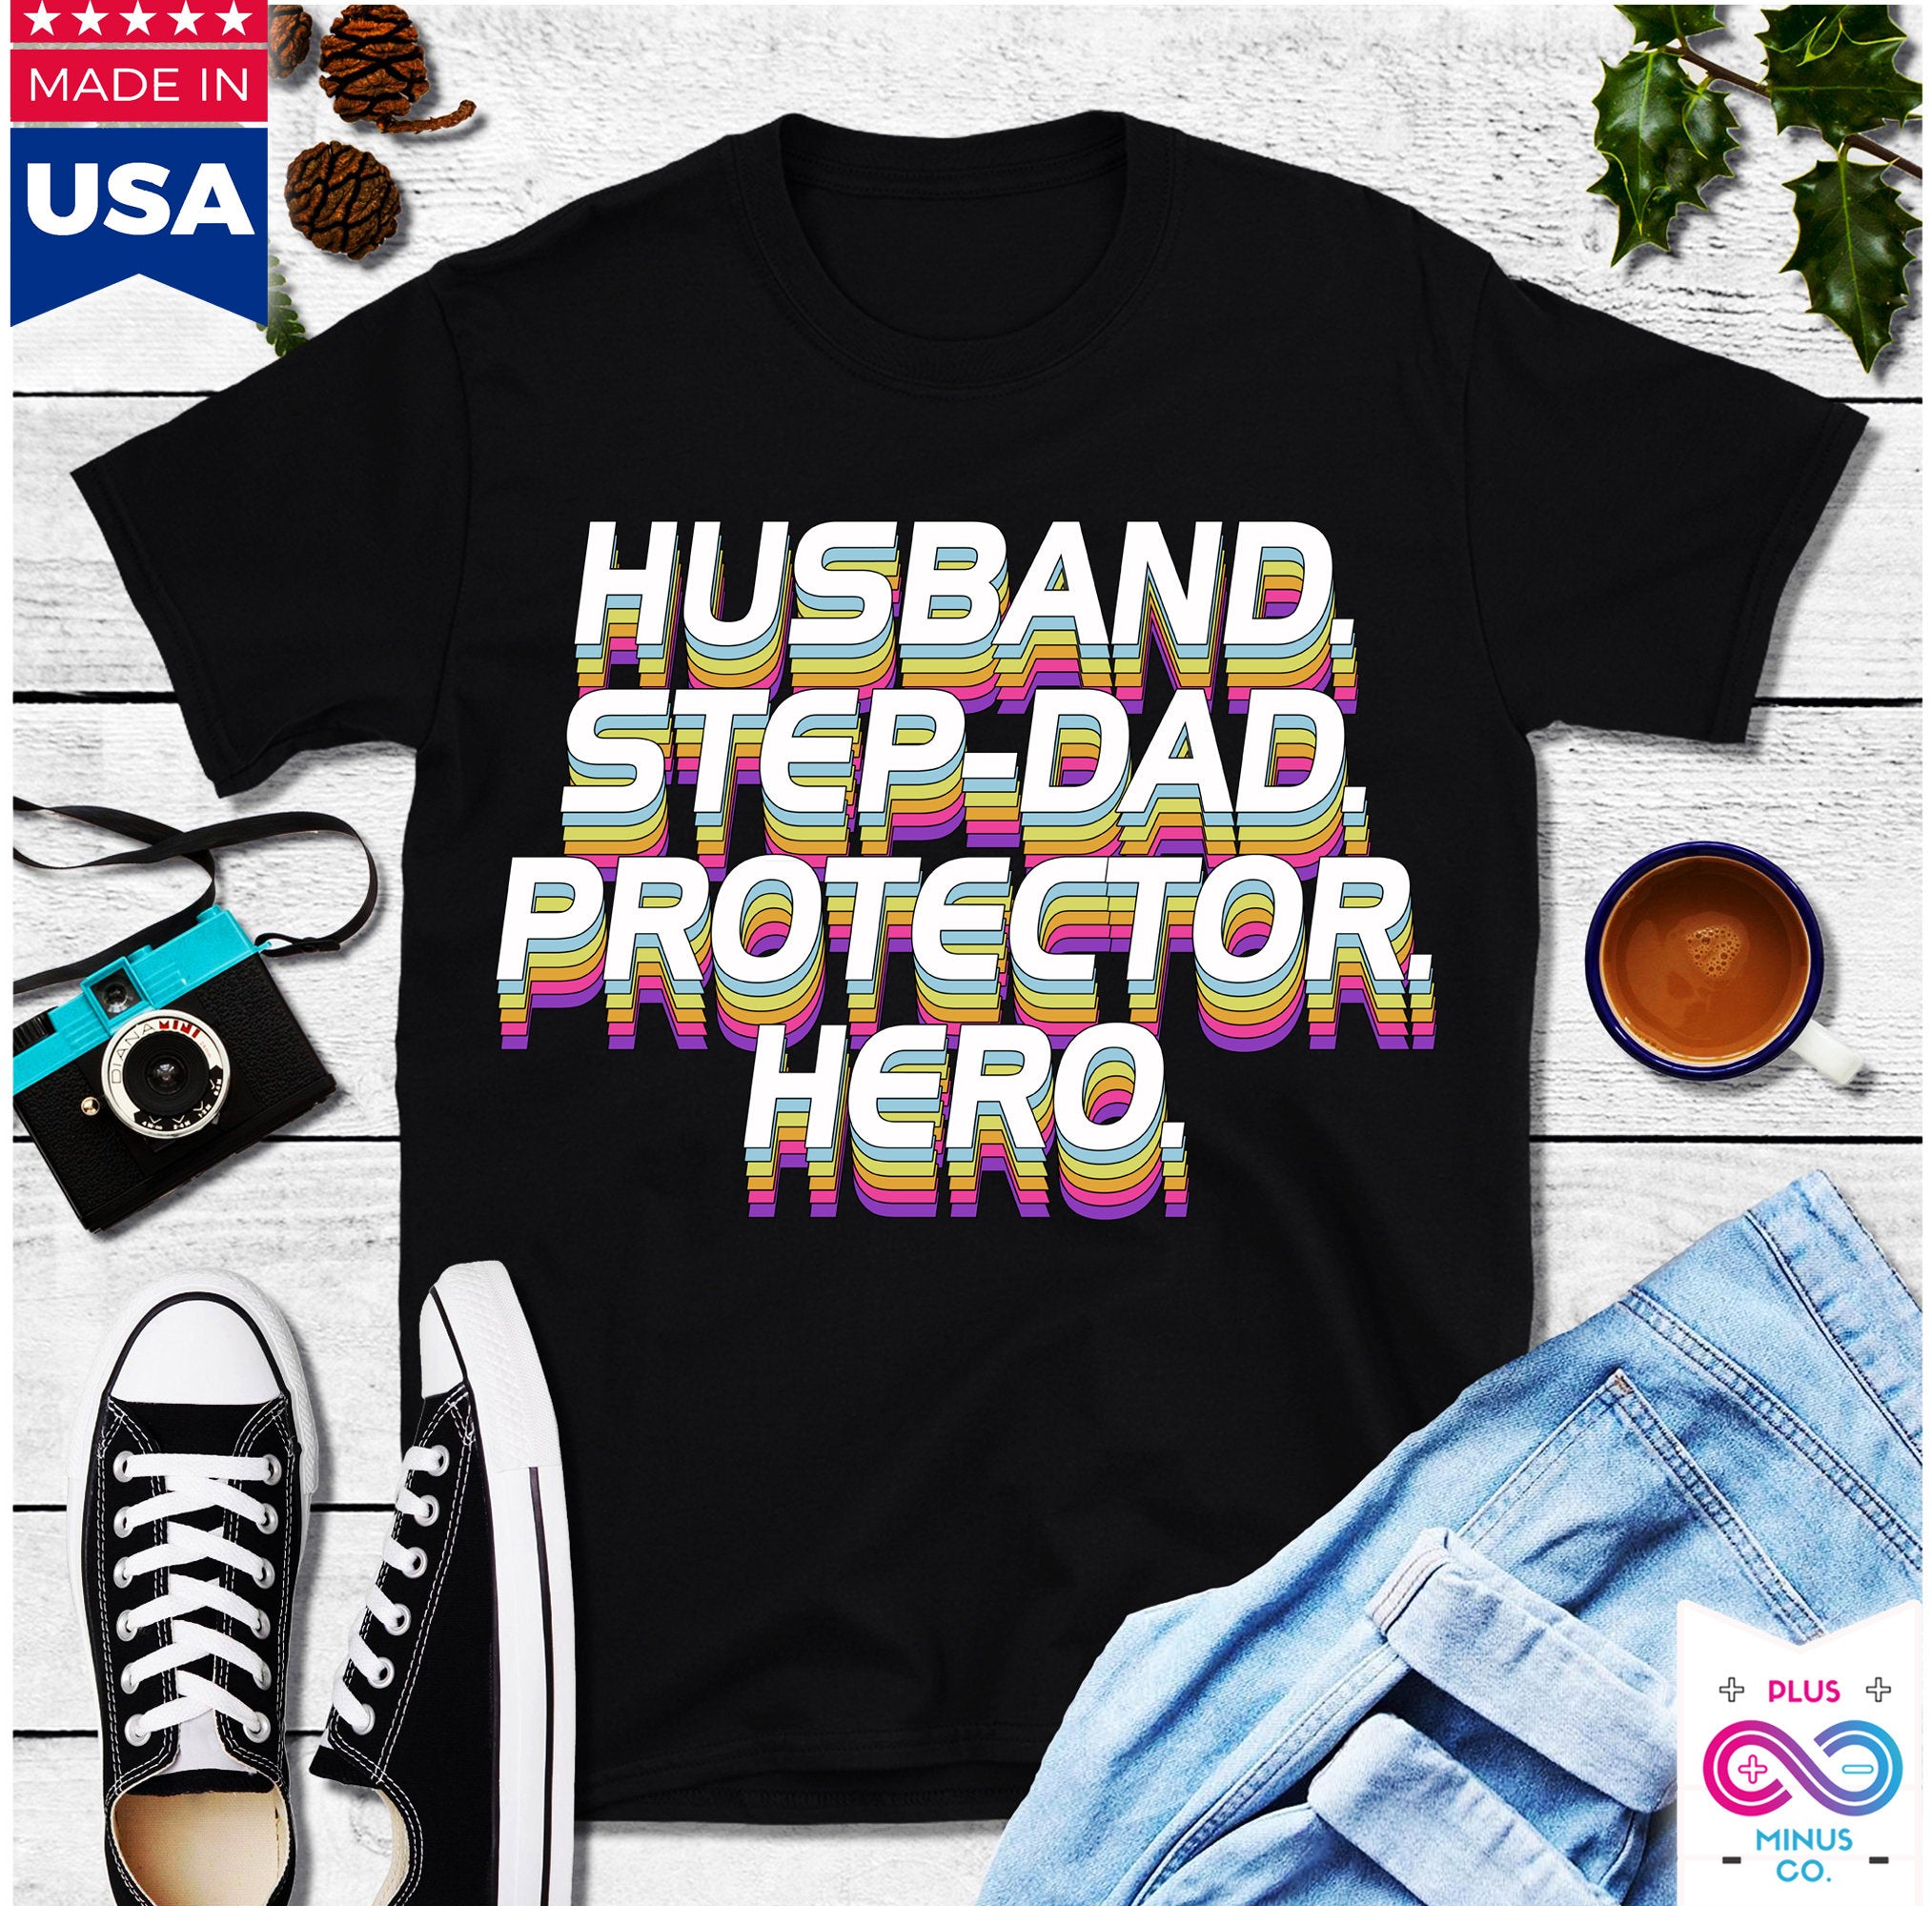 남편 아빠 수호자 영웅 티셔츠, 아버지의 날 선물, 맞춤형 아빠 셔츠, 영웅 셔츠, 아버지의 날 선물, 아빠 티셔츠, 아버지의 날 셔츠 - plusminusco.com